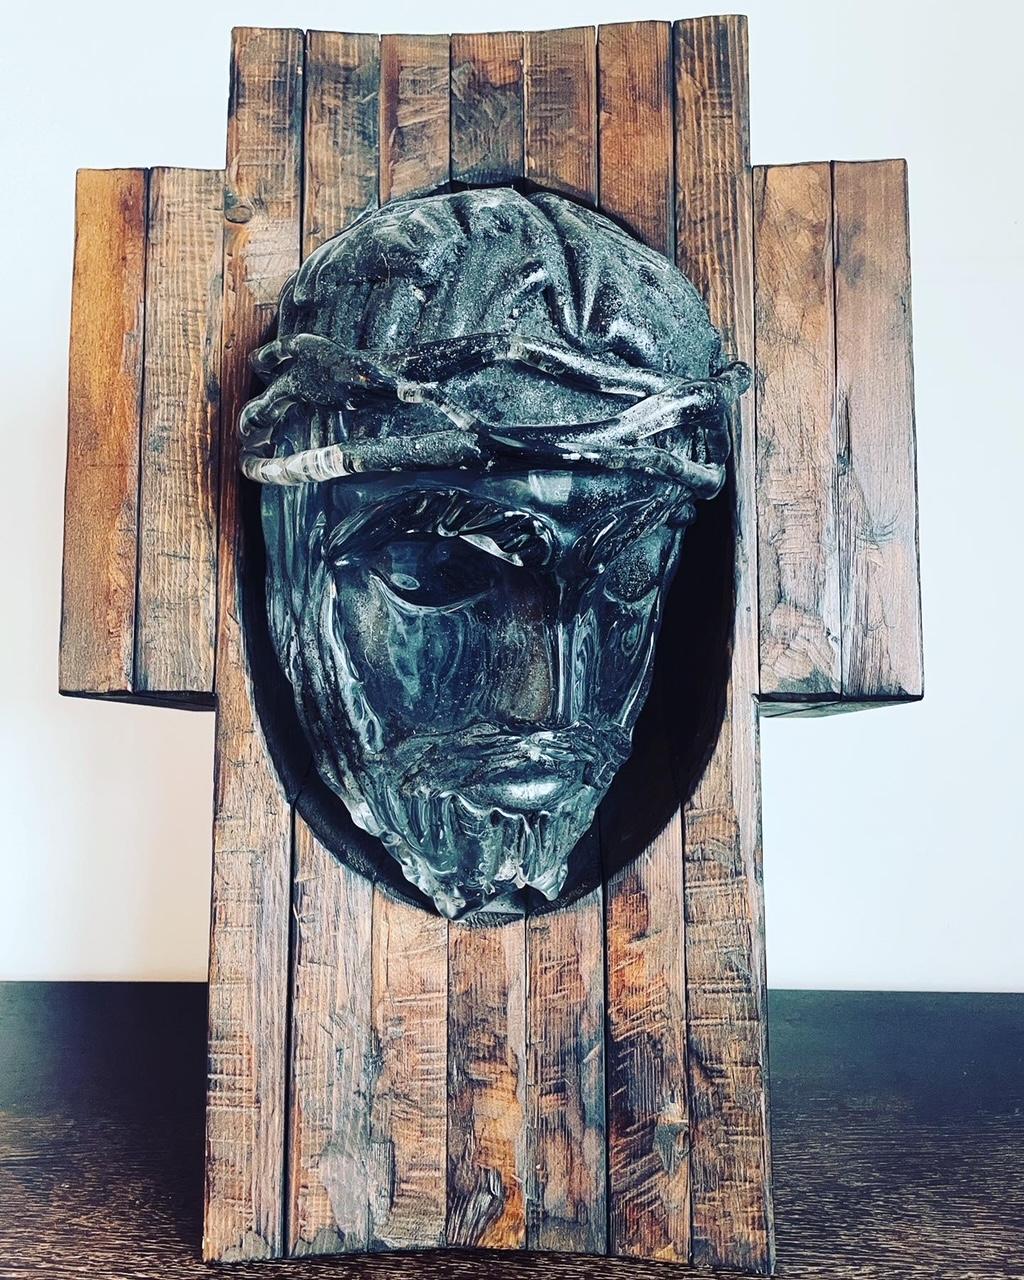 Was. A. Stück. von. Art. Diese Murano-Glasskulptur ist einfach atemberaubend. Der Kopf von Jesus ist aus mundgeblasenem Murano-Glas gefertigt. Es wird freihändig auf einem Punty aus massivem Glas gearbeitet. Es ist in einem massiven Holzkreuz